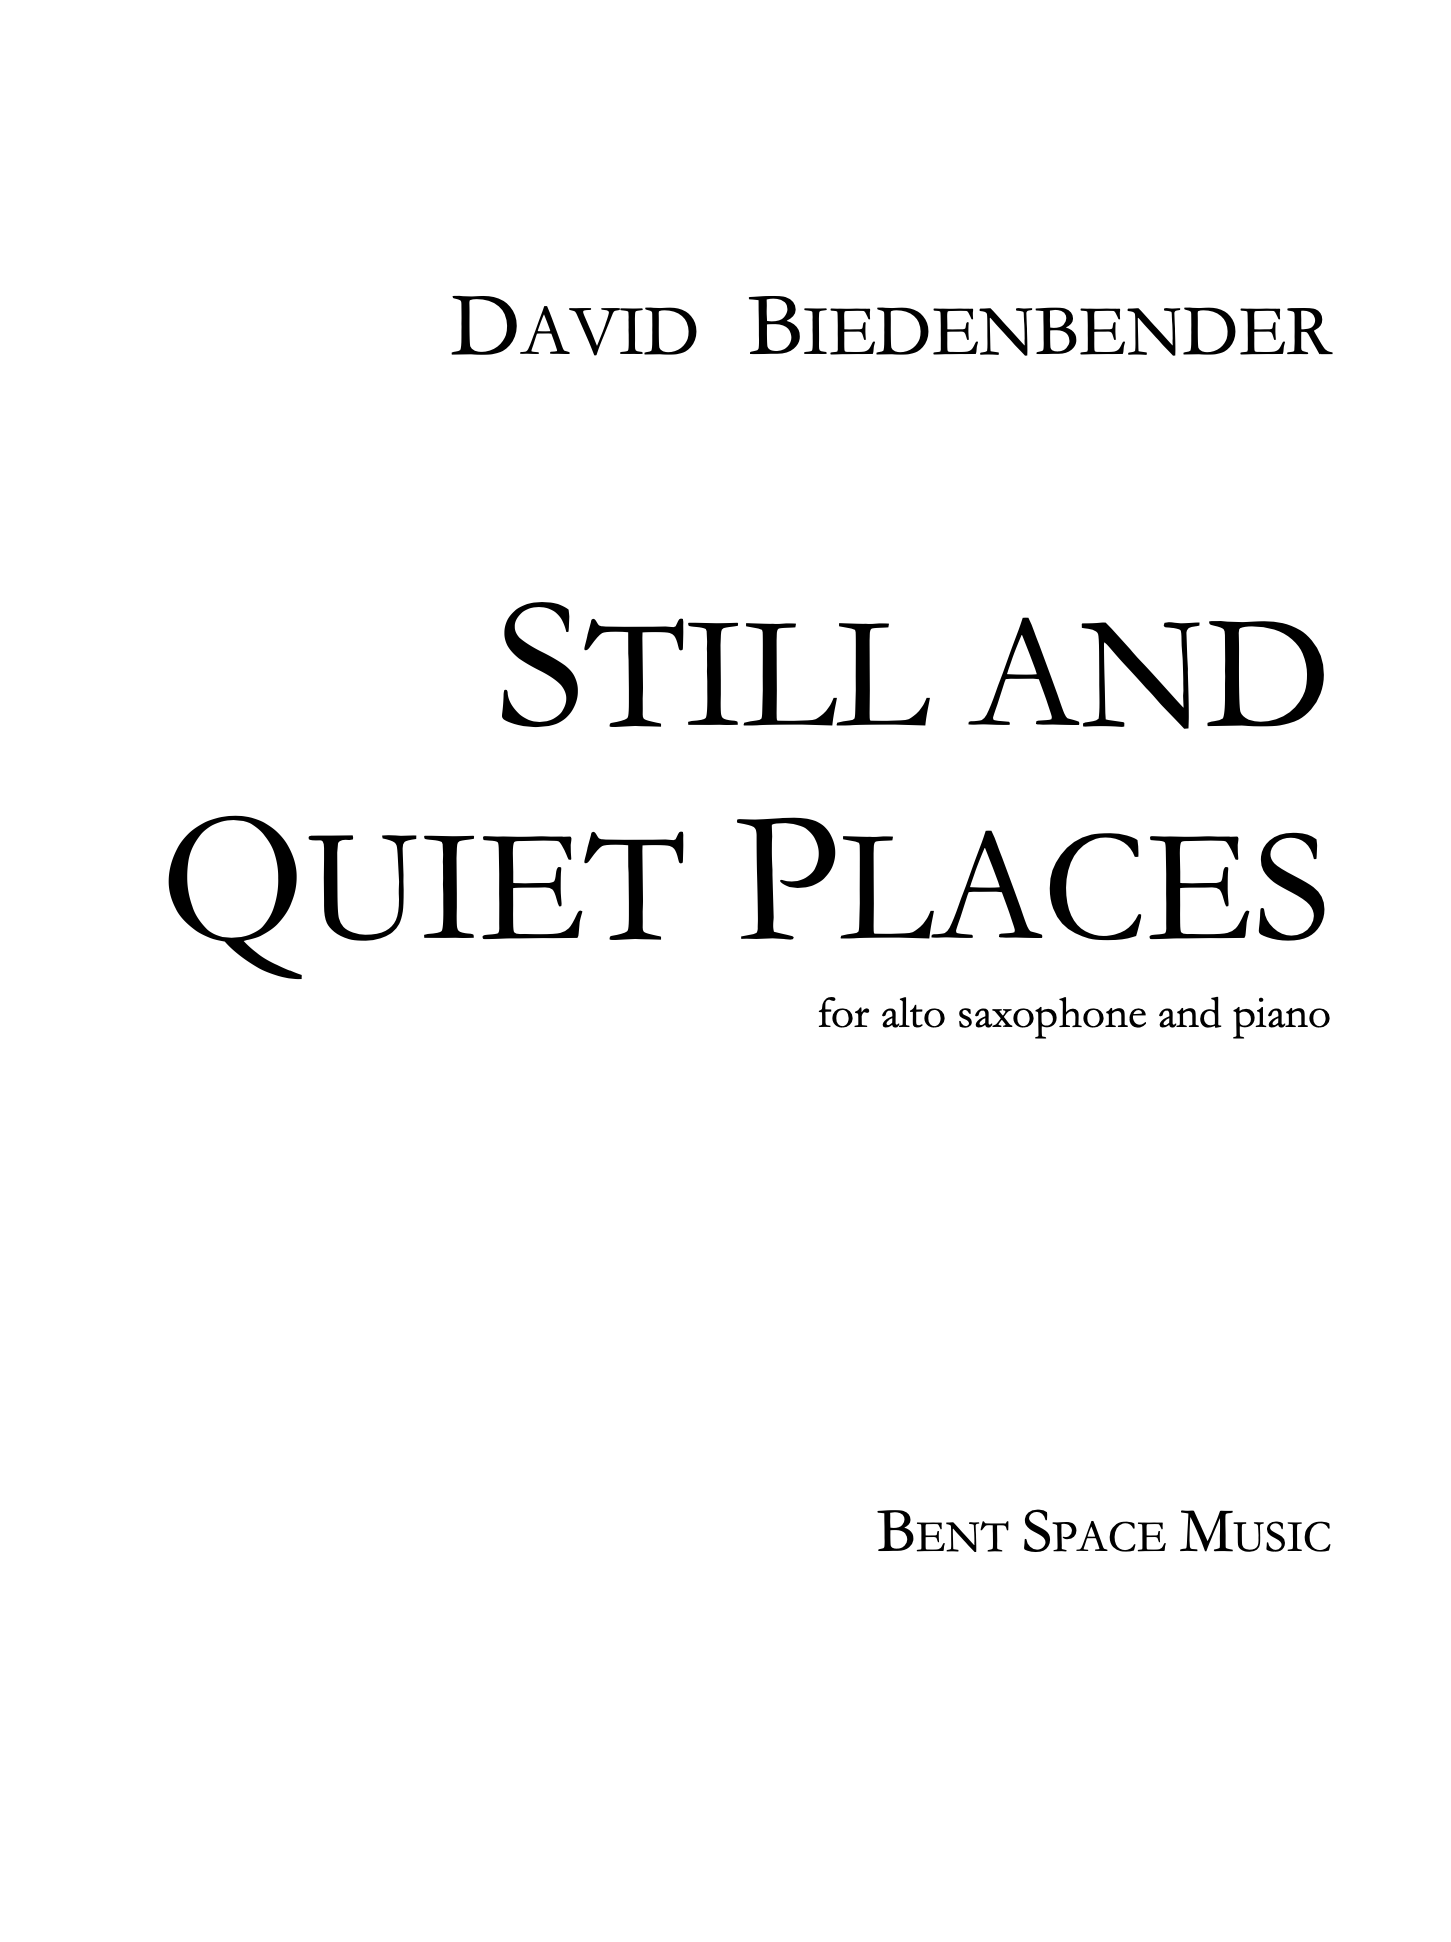 Still And Quiet Places (Saxophone Version) by David Biedenbender